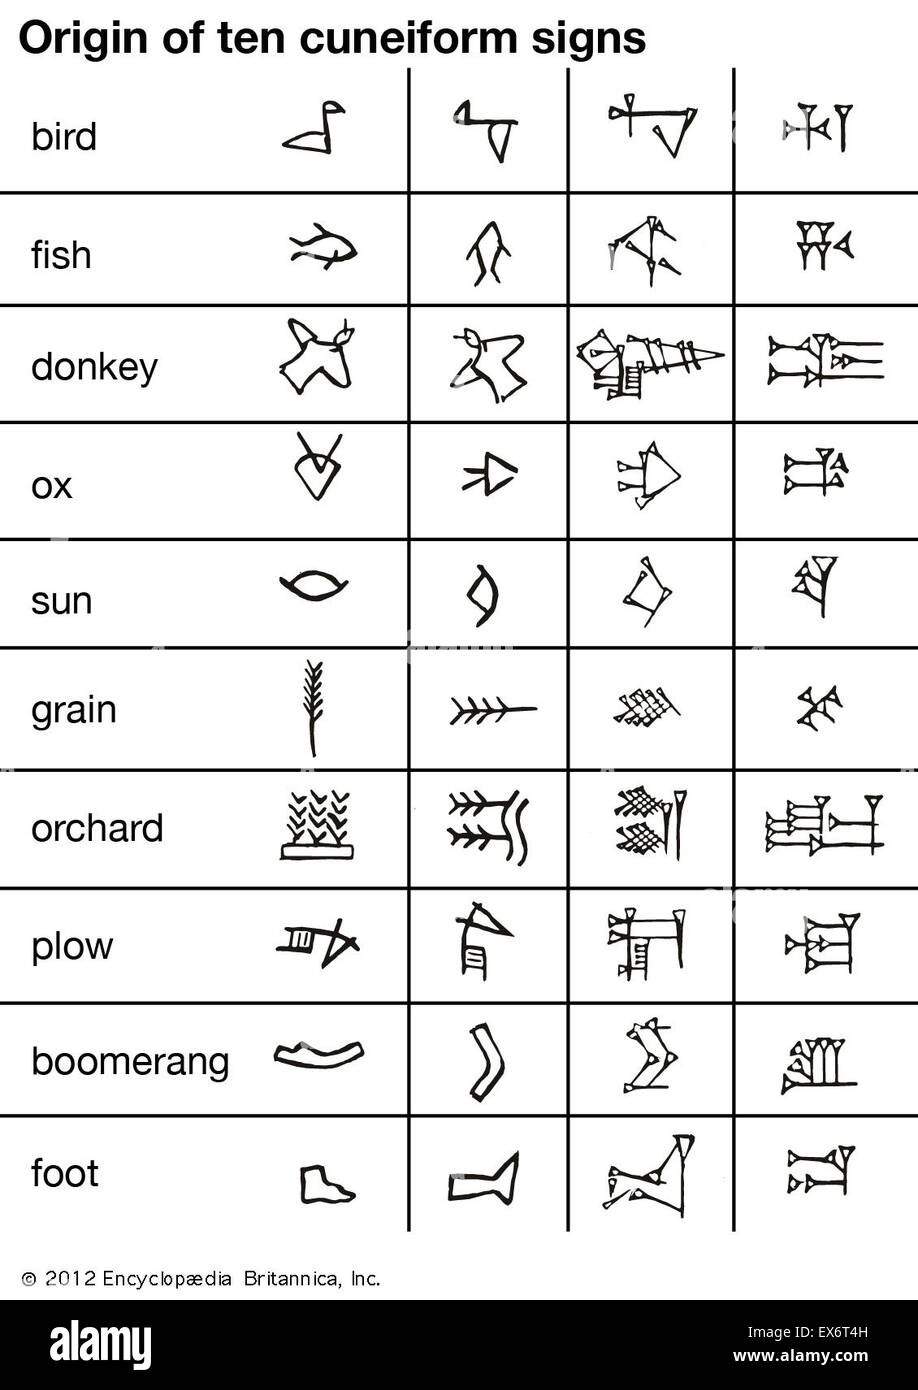 Origin of ten cuneiform signs Stock Photo